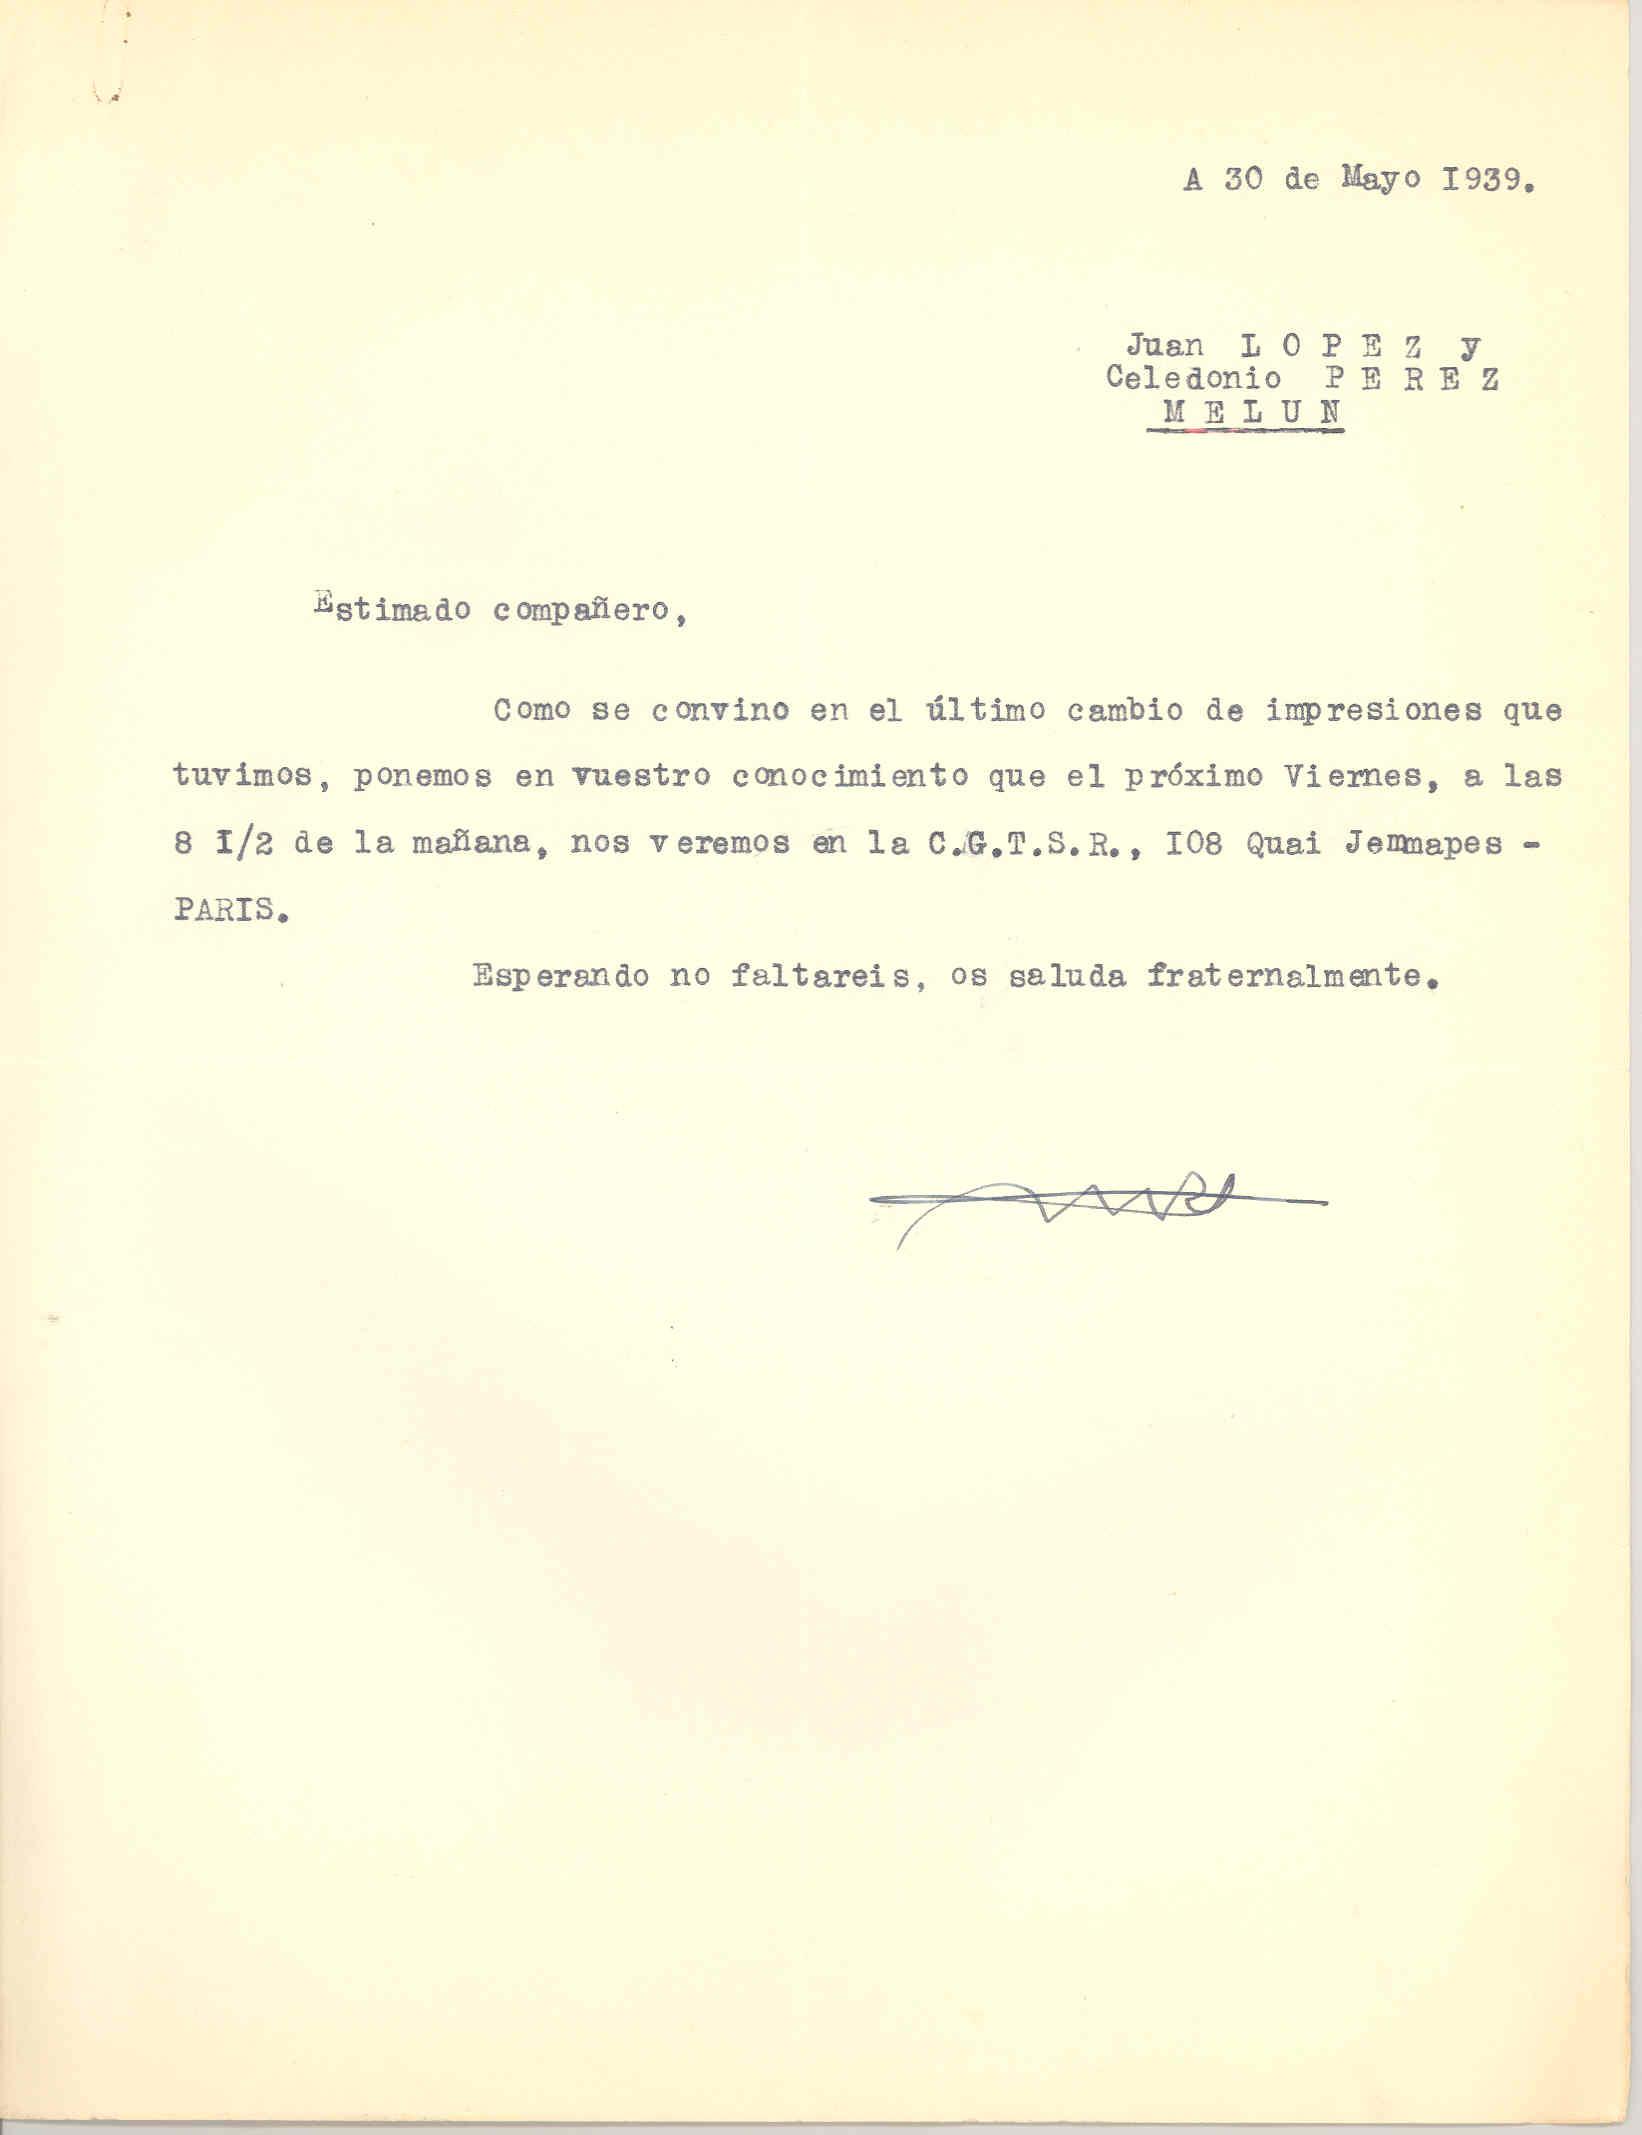 Carta del Consejo General del Movimiento Libertario a Juan López y a Celedonio Pérez informándoles de la próxima reunión del Consejo.